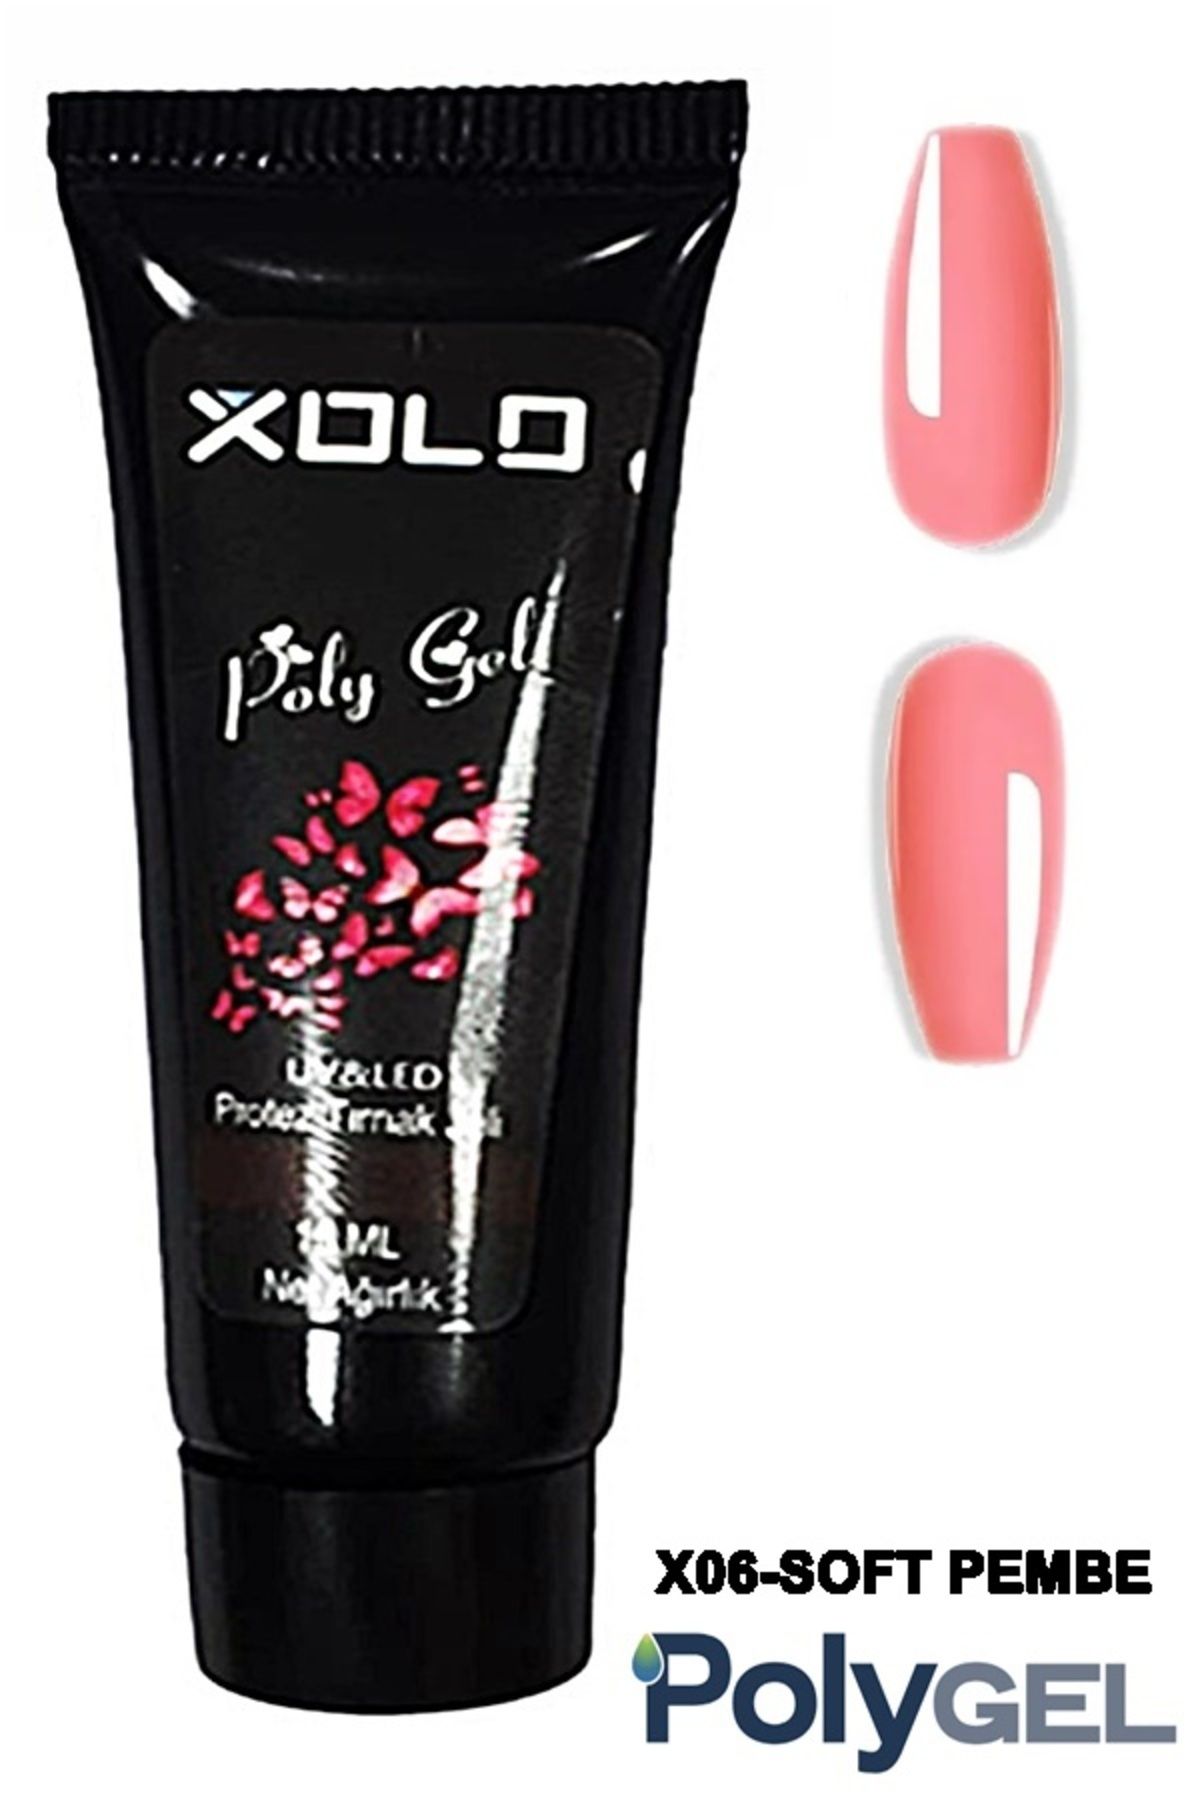 Xolo Polygel Protez Tırnak Oje Kalıcı Akrilik Trend Renkler Serisi Jel Polijel Poly Gel 15 ml